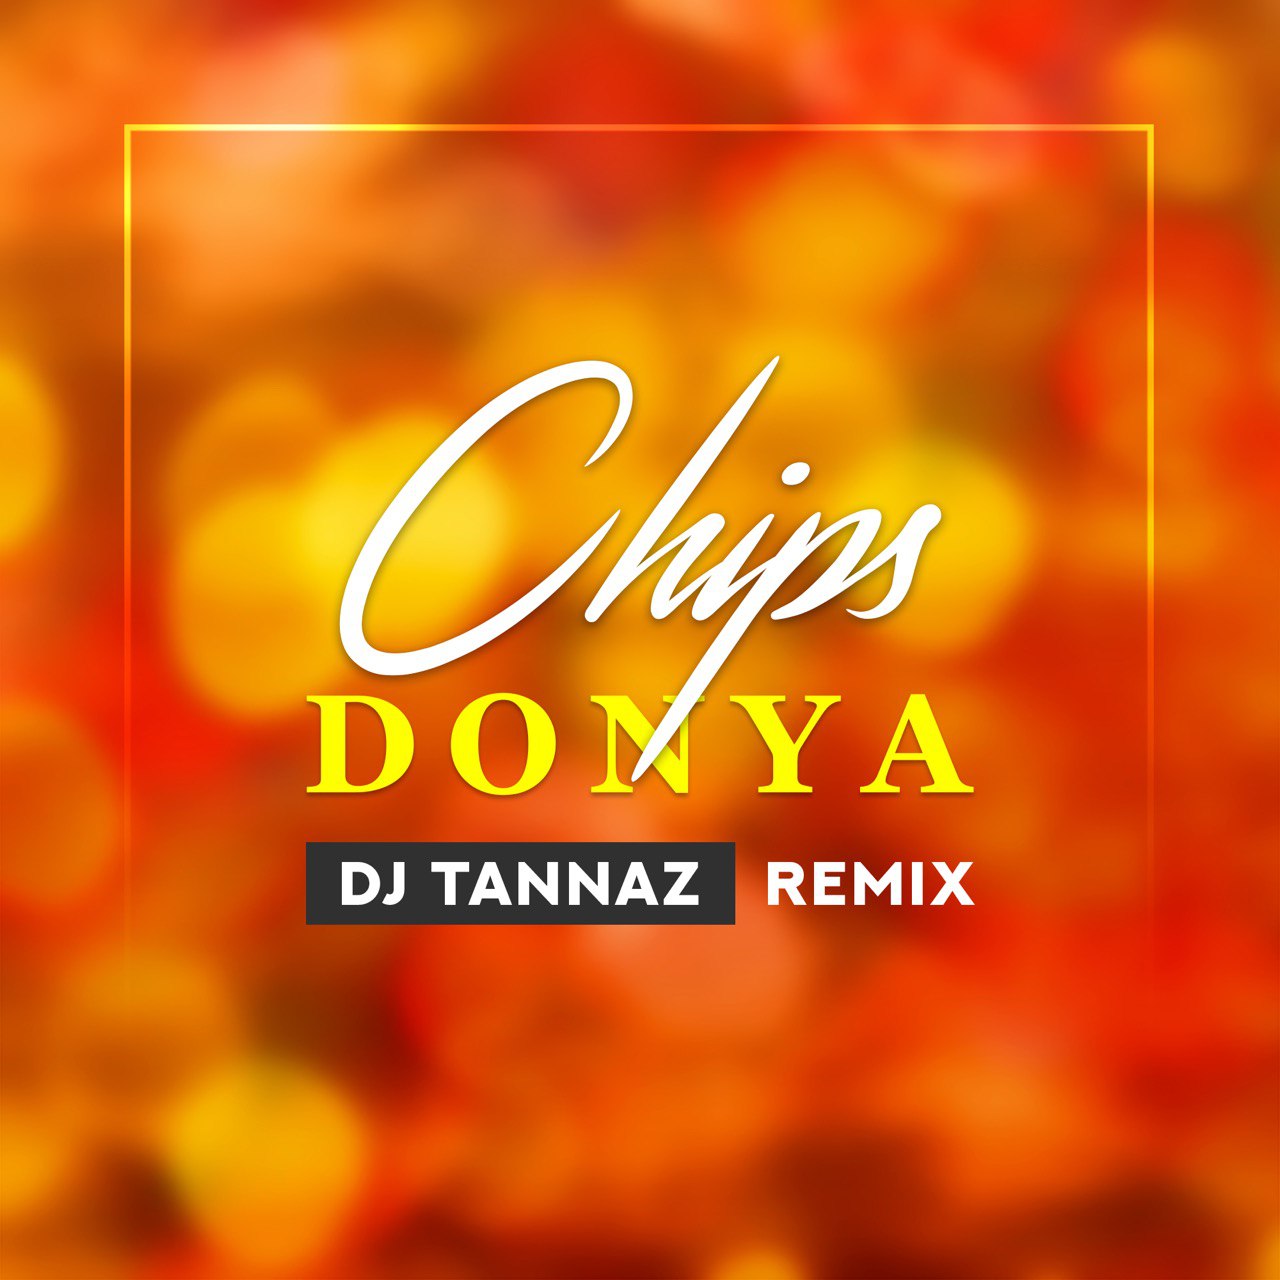 دانلود ریمیکس جدید دیجی طناز به نام چیپس
دانلود با لینک مستقیم : کیفیت ۳۲۰ MP3  DJ Tannaz – Chips (Remix)